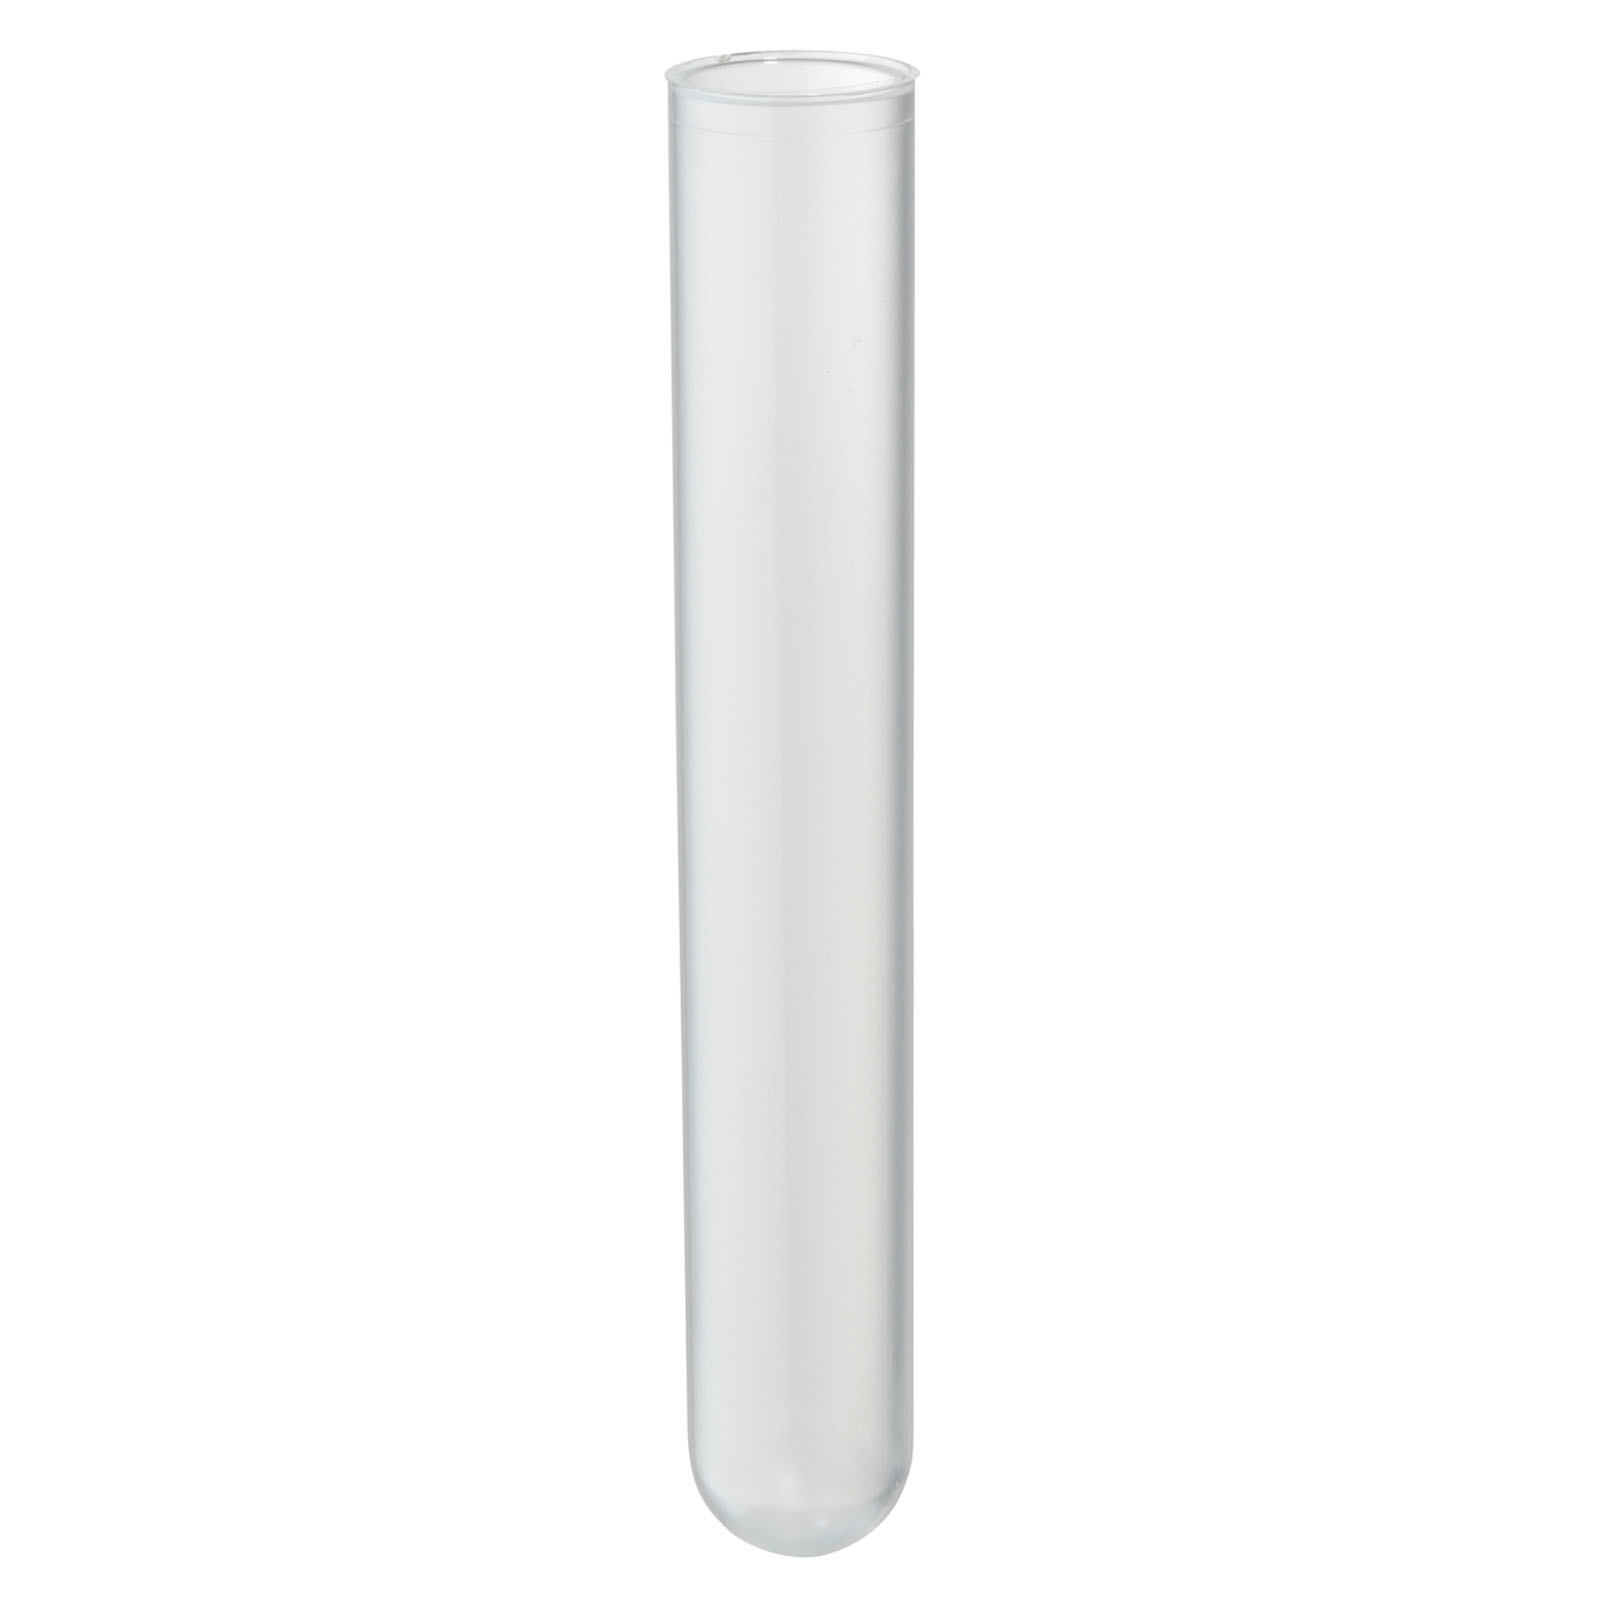  Blanc 5,1 cm capuchon en plastique pour tubes dexpédition postale tubes Craft postal tubes   Lot de 100  